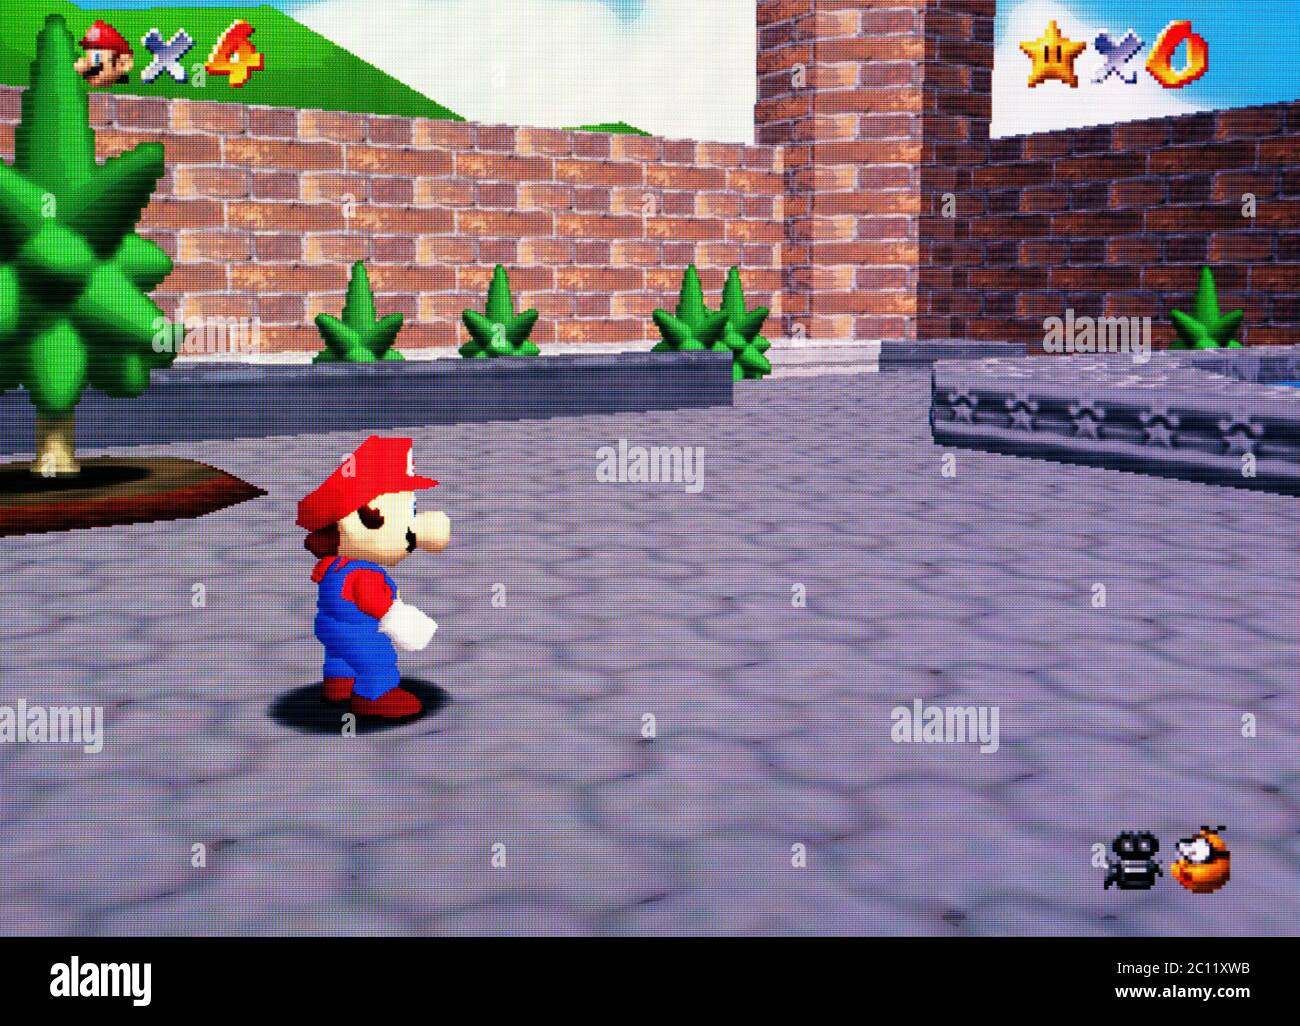 Super Mario 64 - Nintendo 64 Videospiel - nur für redaktionelle Verwendung Stockfoto